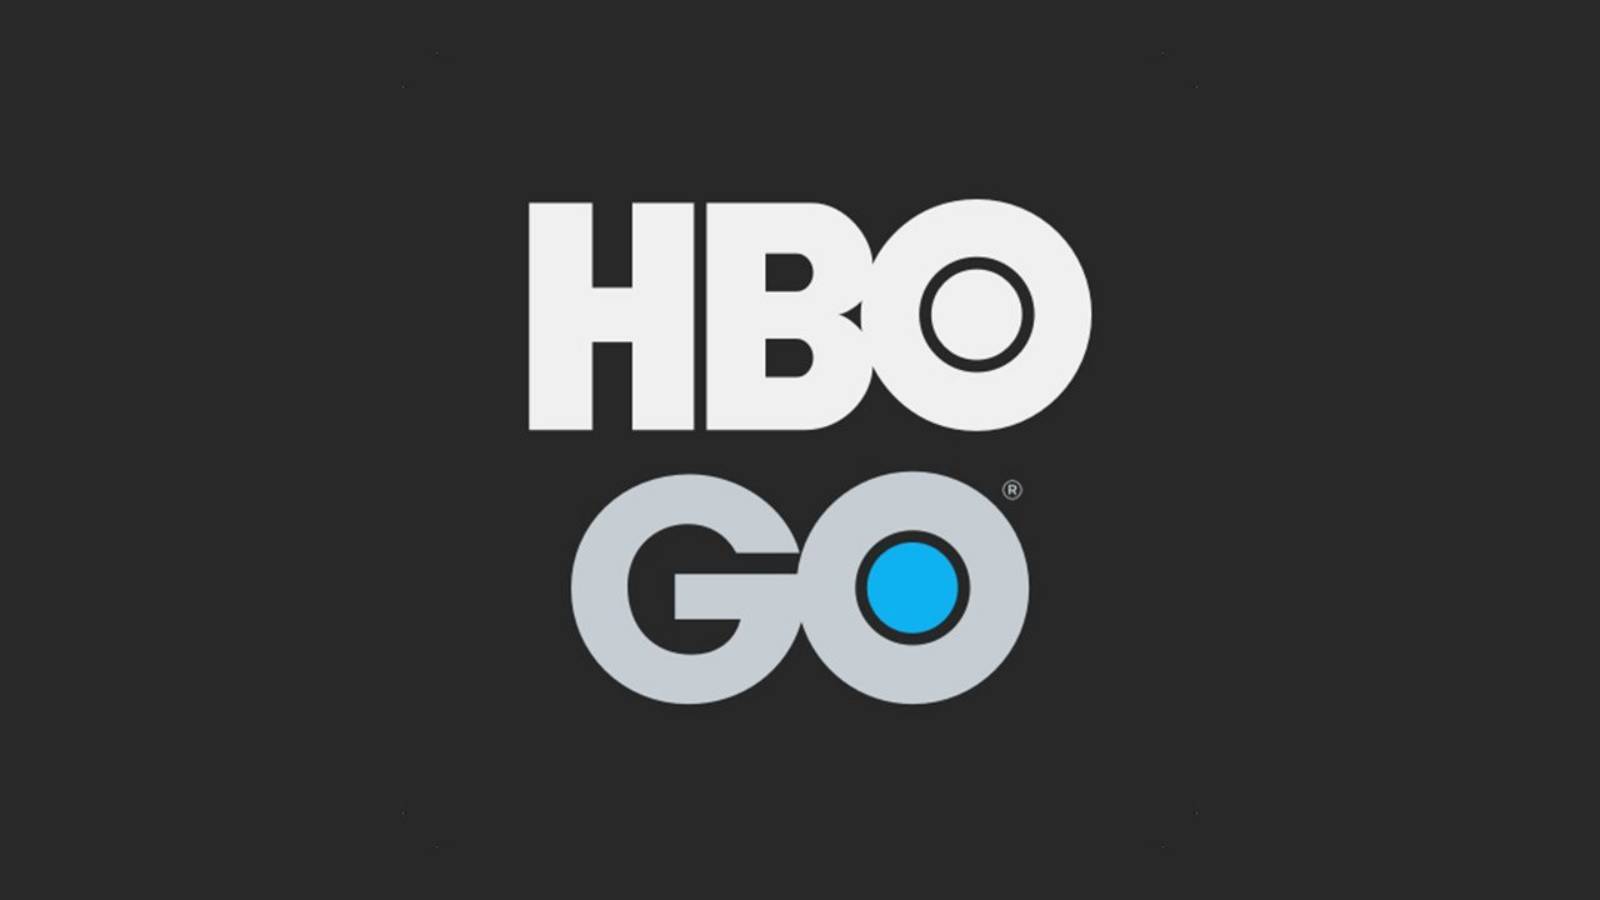 Startuje HBO Go